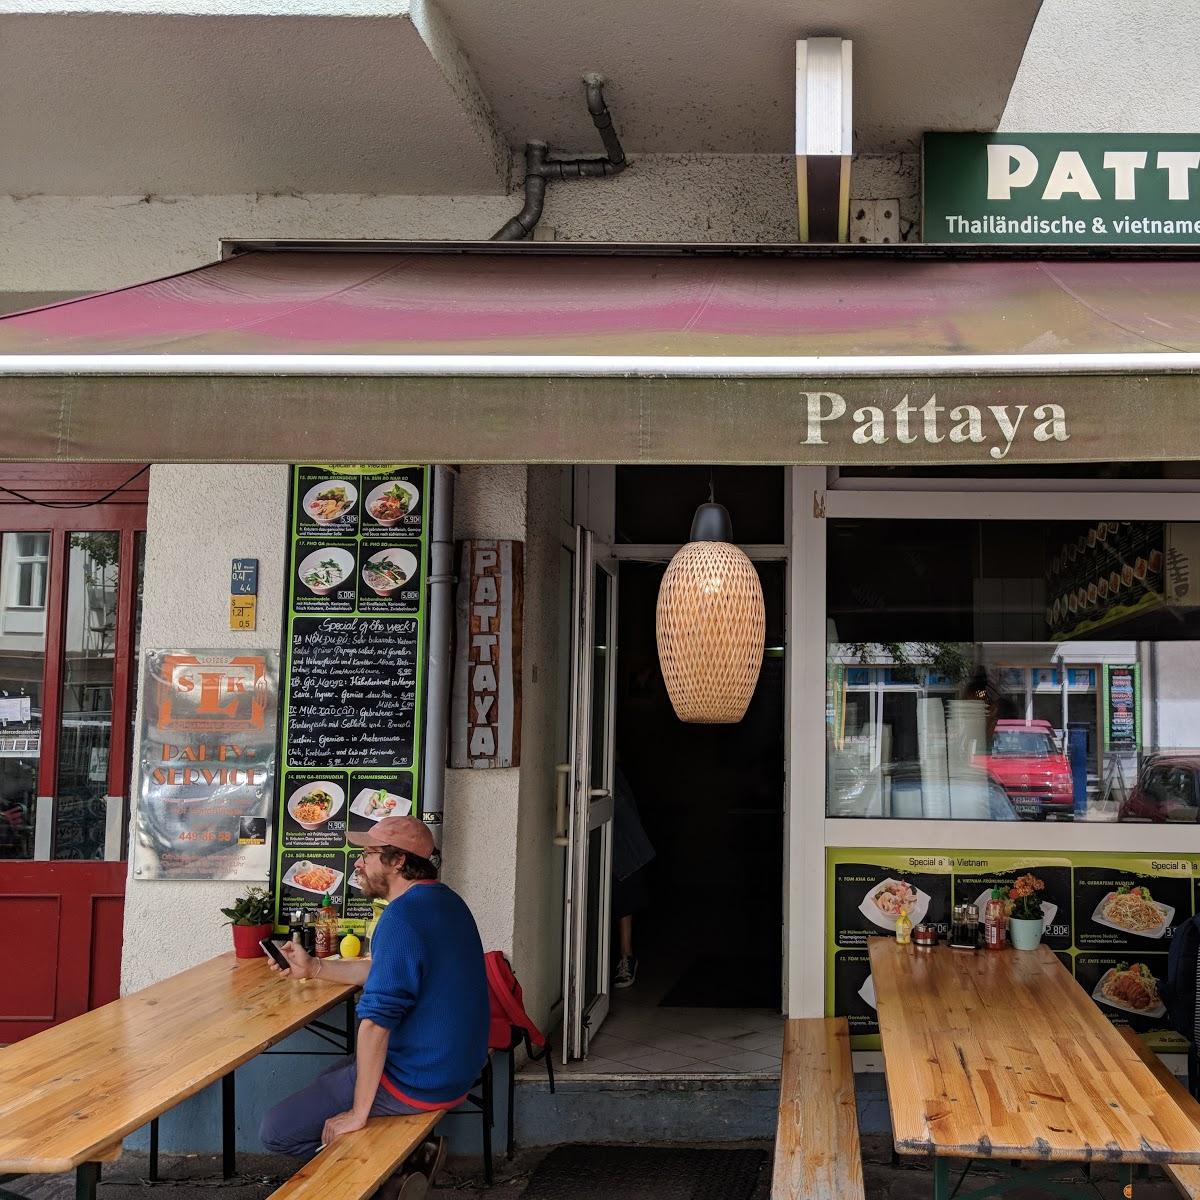 Restaurant "Pattaya" in Berlin